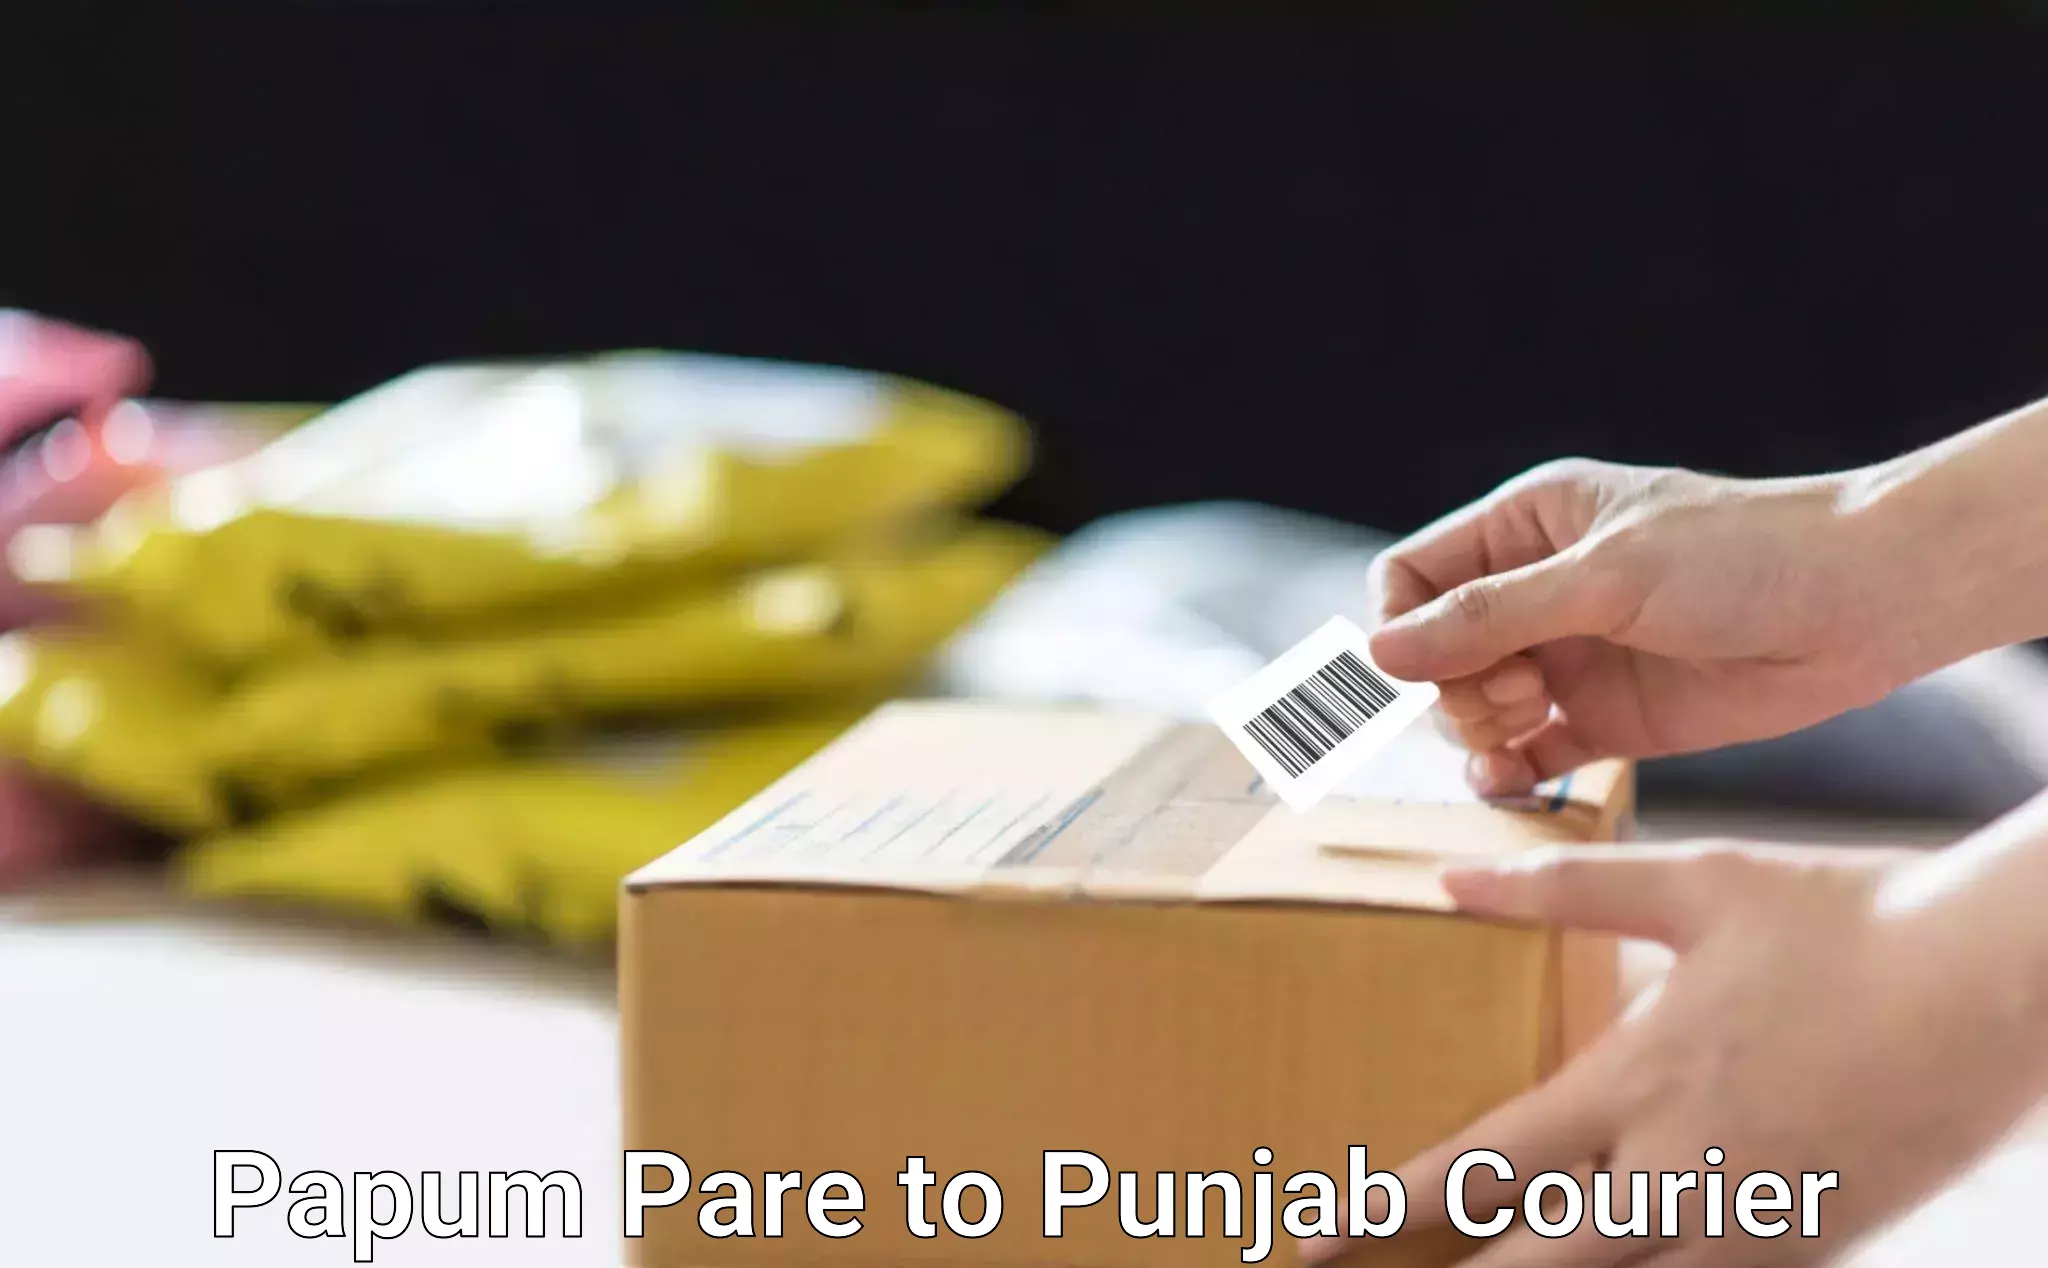 Efficient logistics management Papum Pare to Punjab